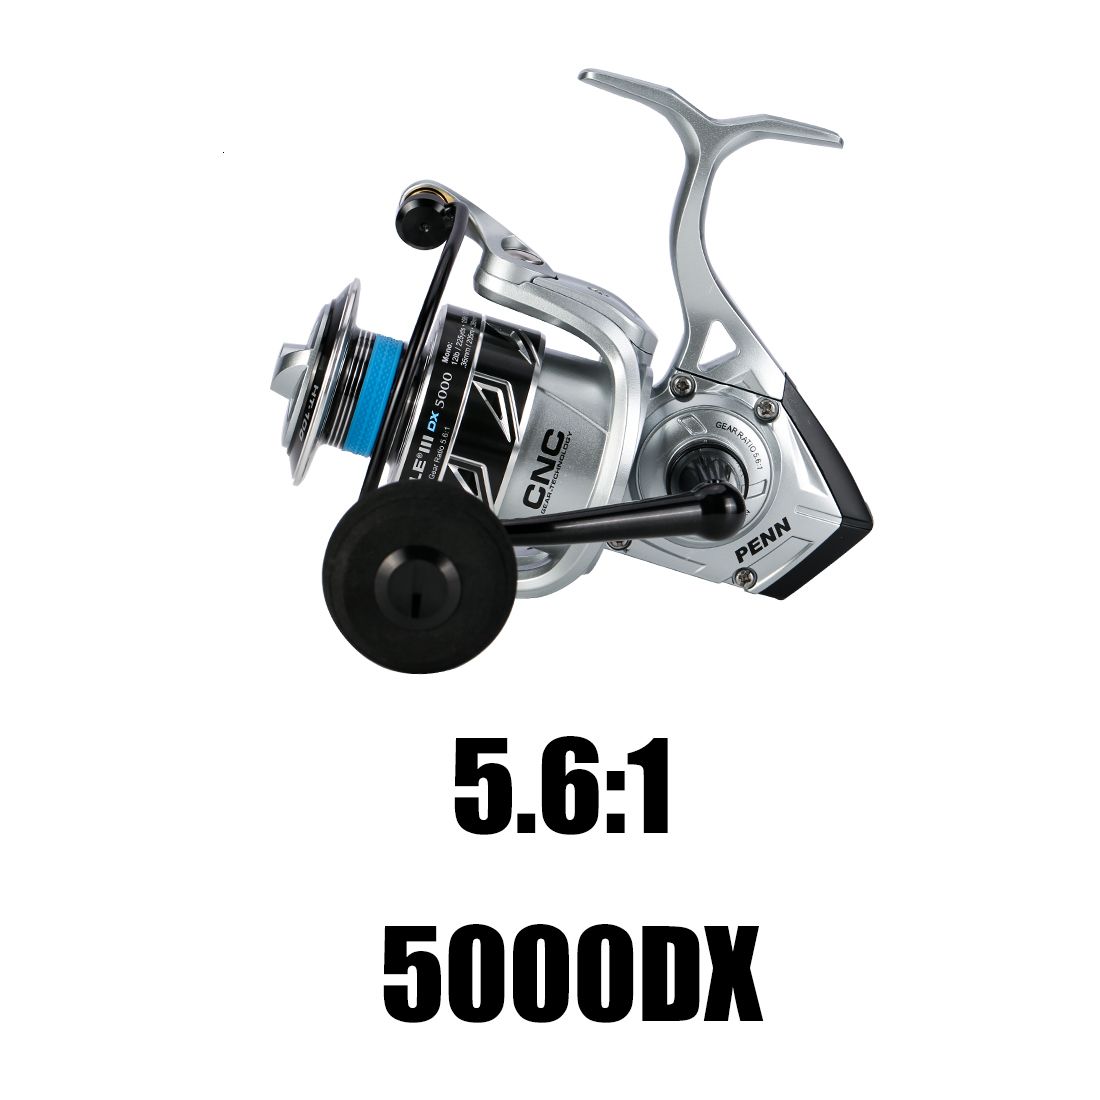 5000dx-6